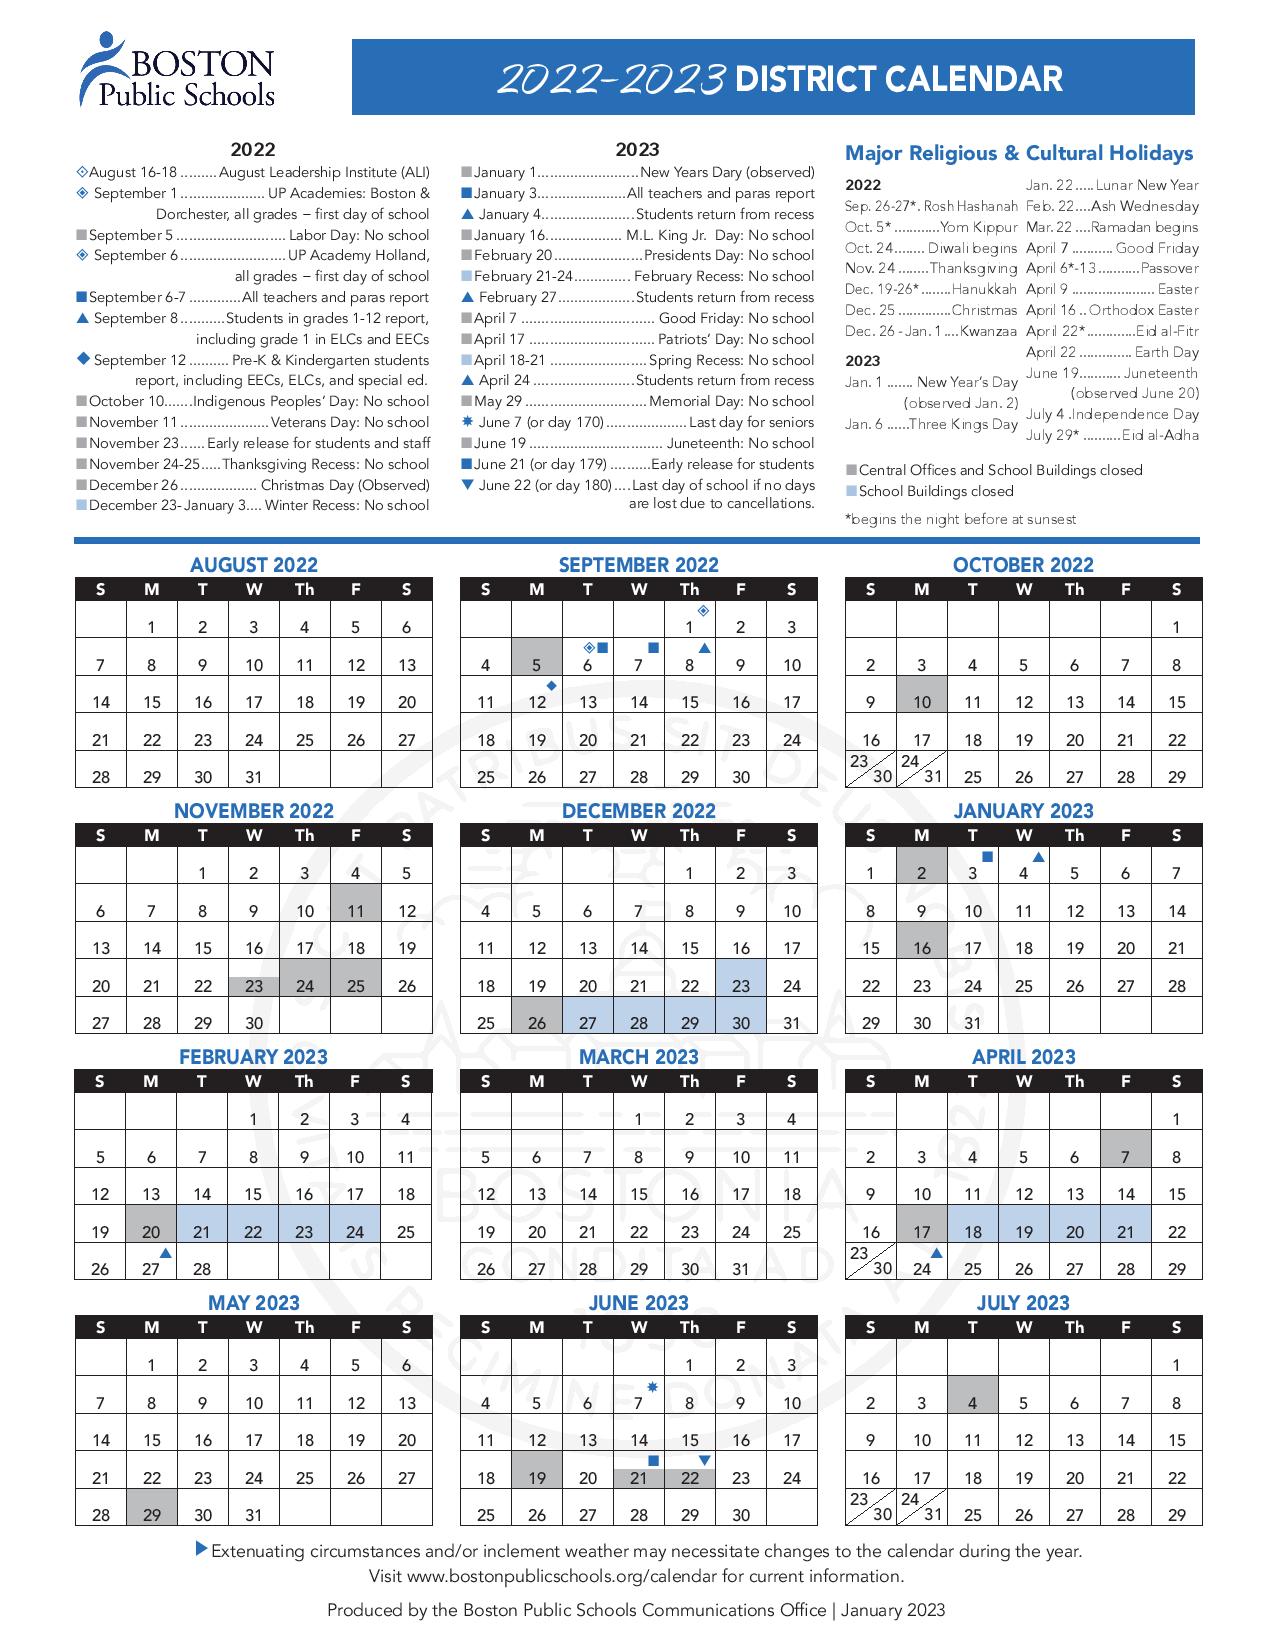 Boston Public Schools Calendar Holidays 2022 2023 PDF